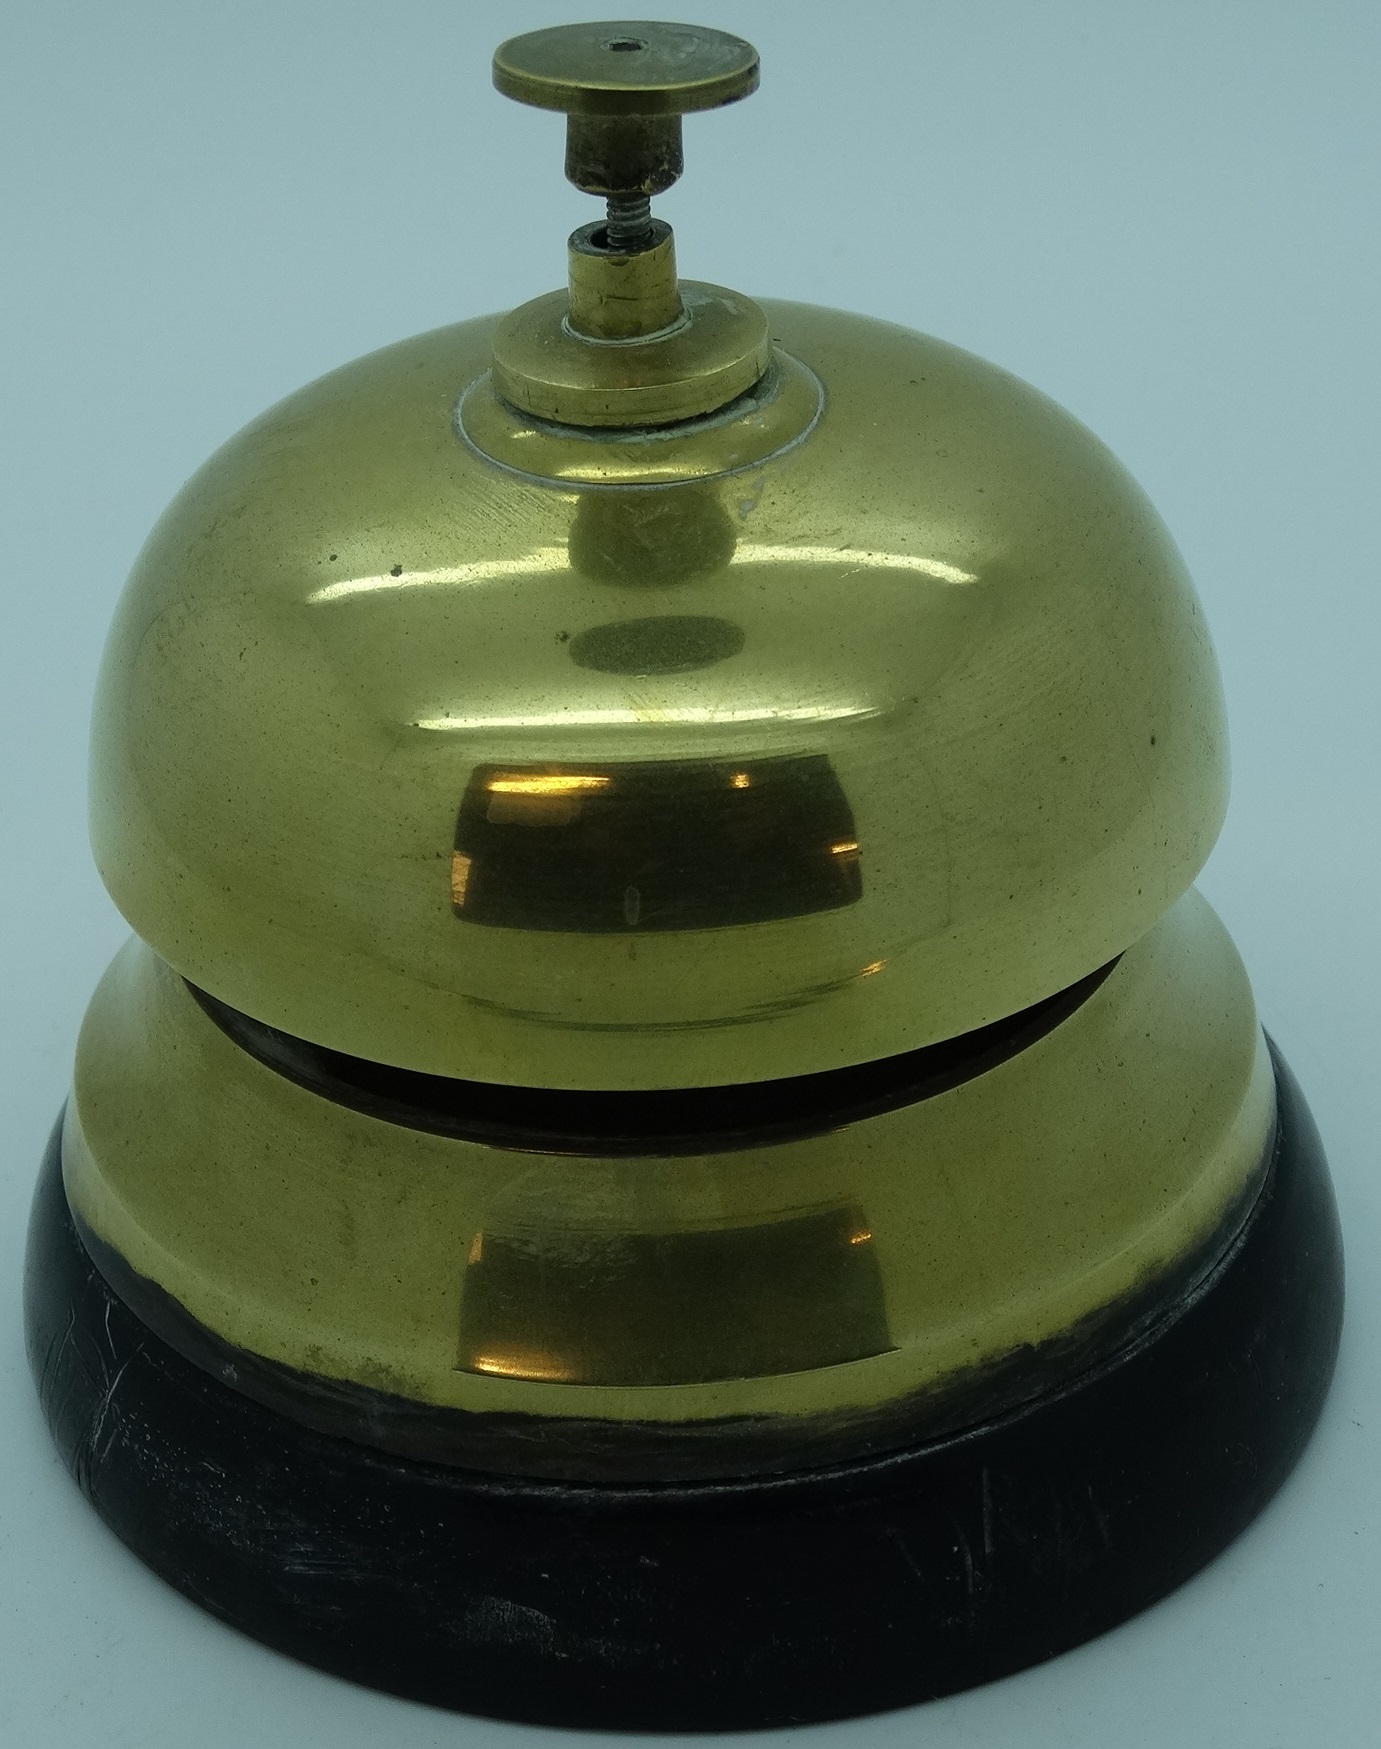 Brass reception bell